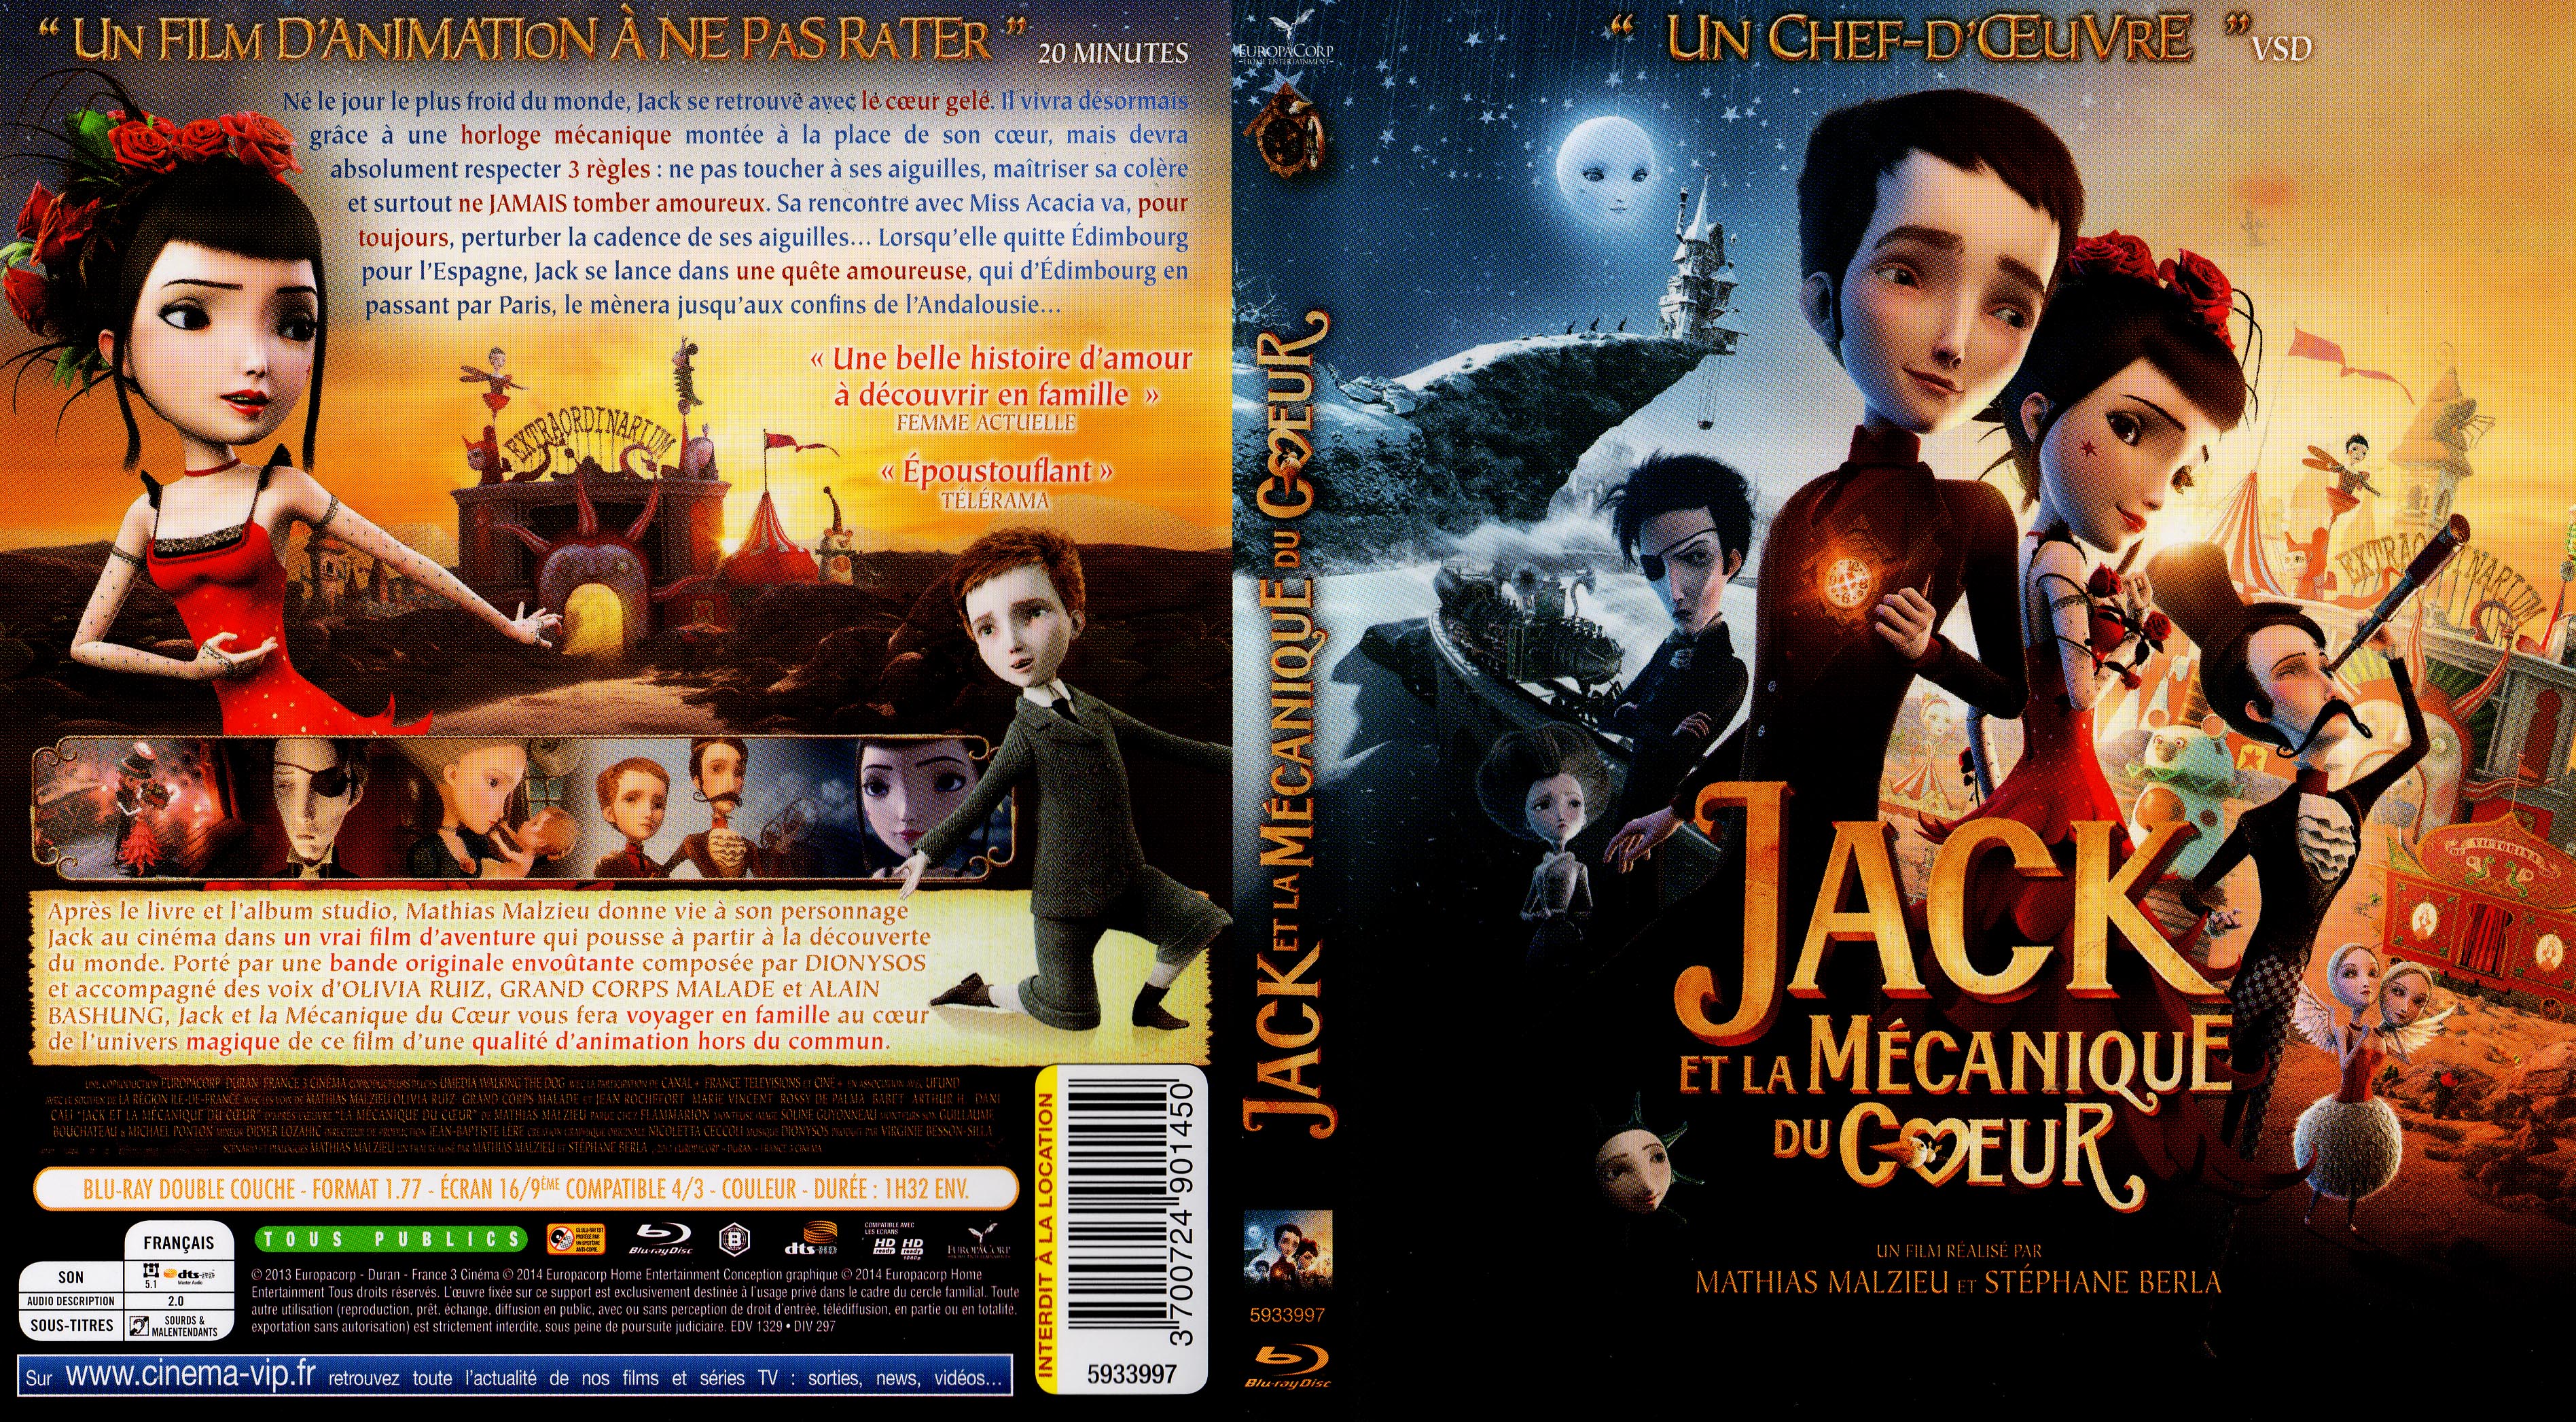 Jaquette DVD Jack et la mecanique du coeur (BLU-RAY)